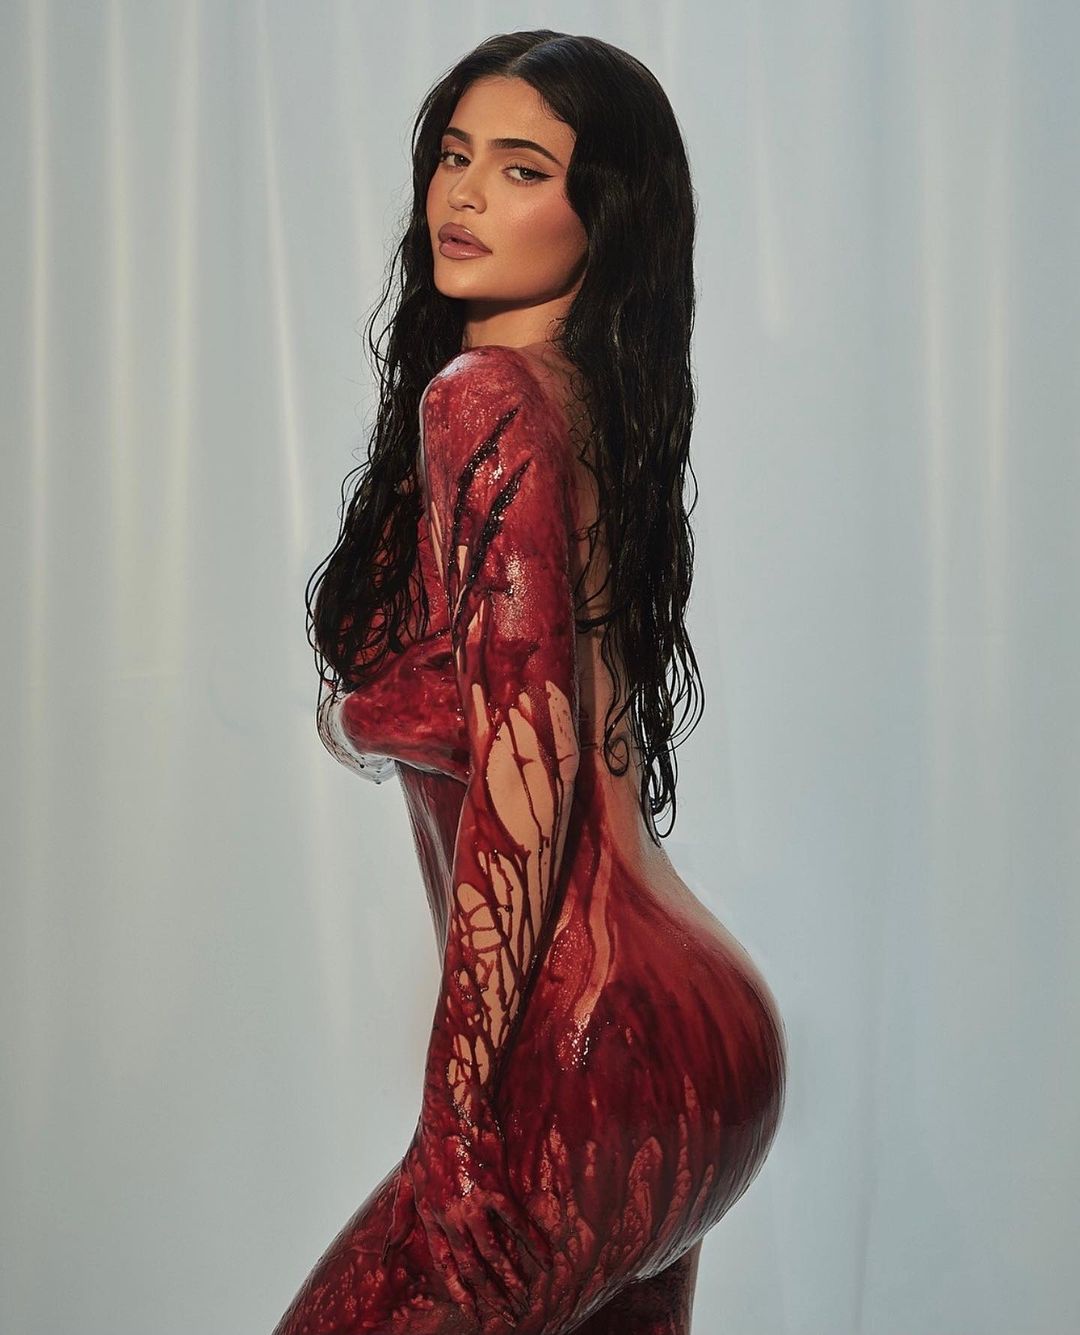 FOTOS Kylie Jenner comparte la trampa de la sed mientras los rumores de engao se arremolinan! - Photo 20